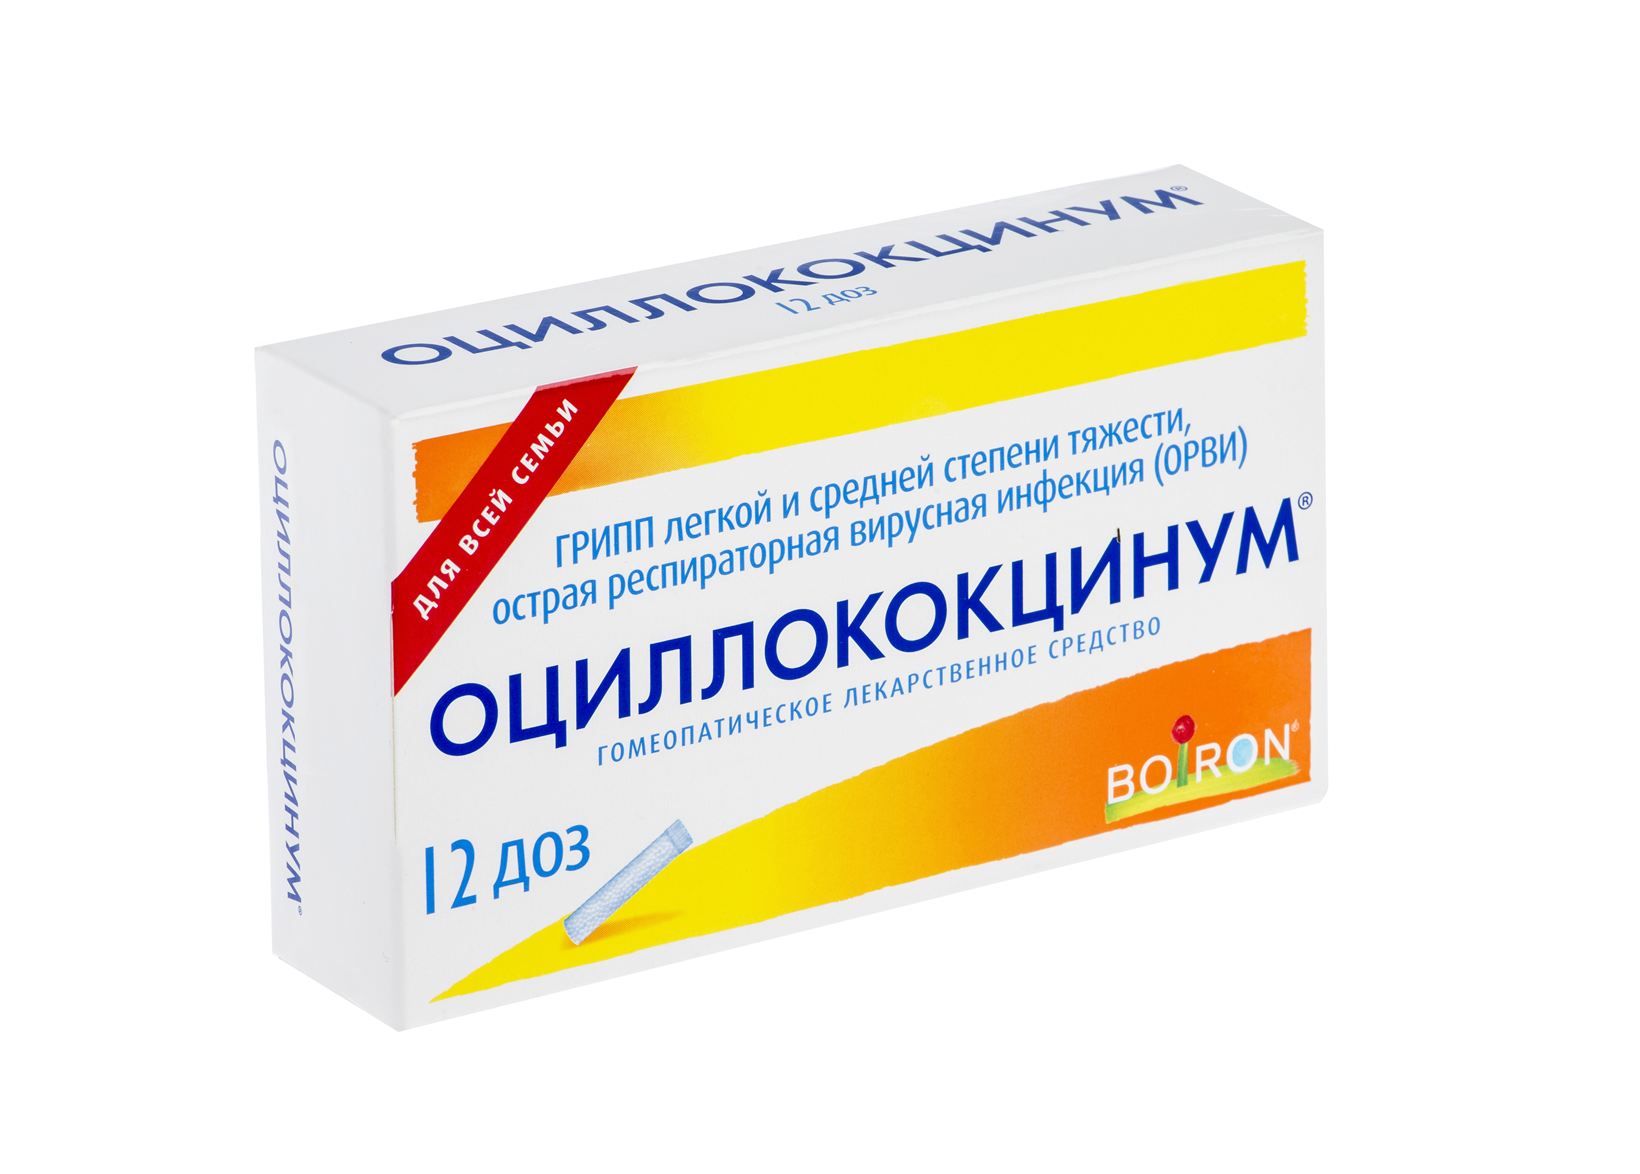 Купить Оциллококцинум гран. 1г №12 в Новосибирске по низкой цене .